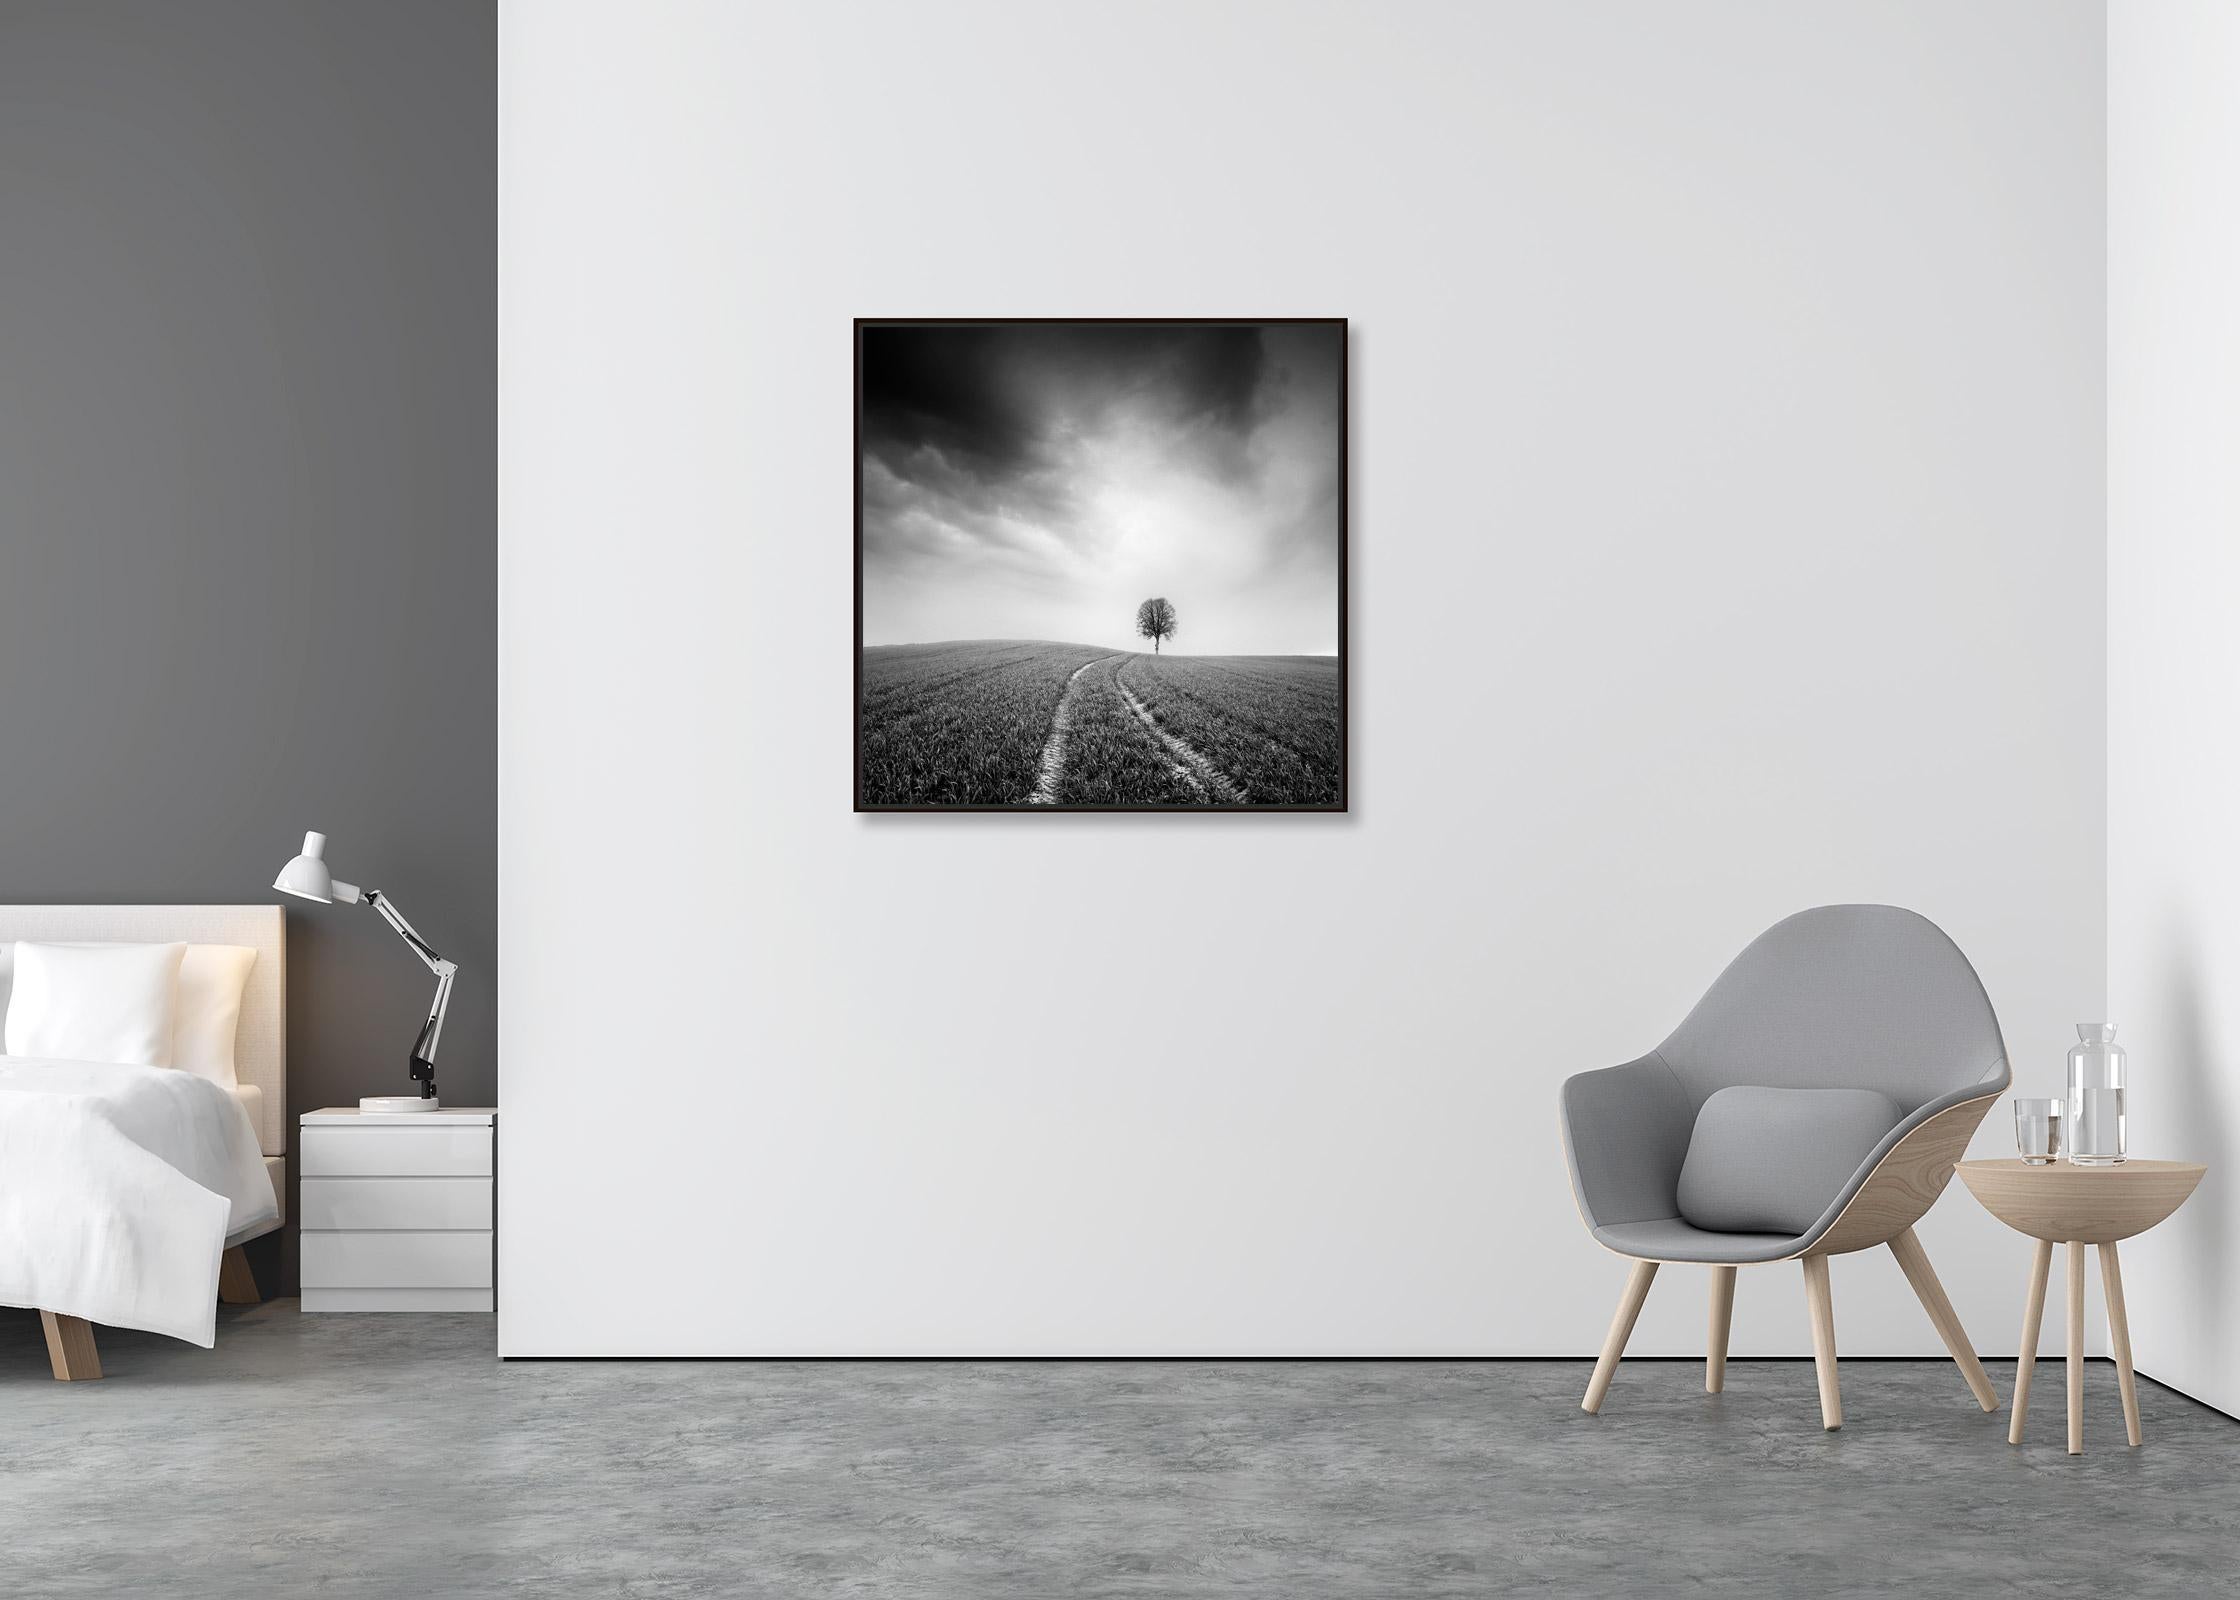 Bauernhof, ein einzelner Baum, minimalistische schwarz-weiße Kunst-Landschaftsfotografie (Minimalistisch), Print, von Gerald Berghammer